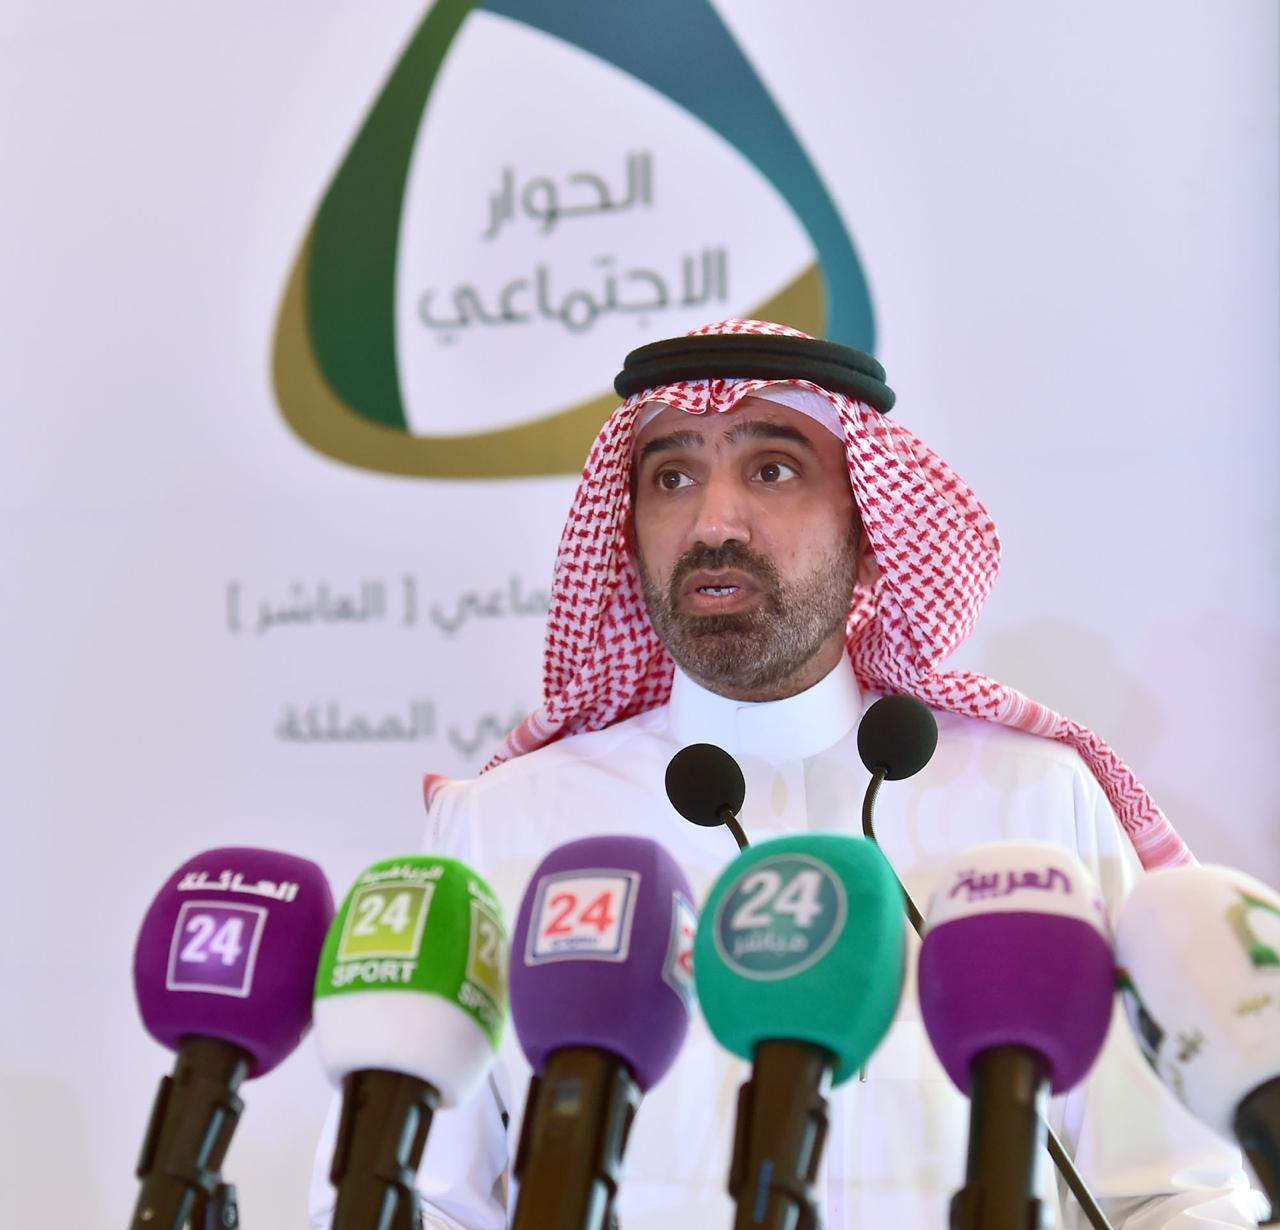 وزير العمل السعودي : نعمل مع شركائنا أطراف الإنتاج الثلاثة في تأهيل القوى العاملة لمواكبة مستقبل العمل